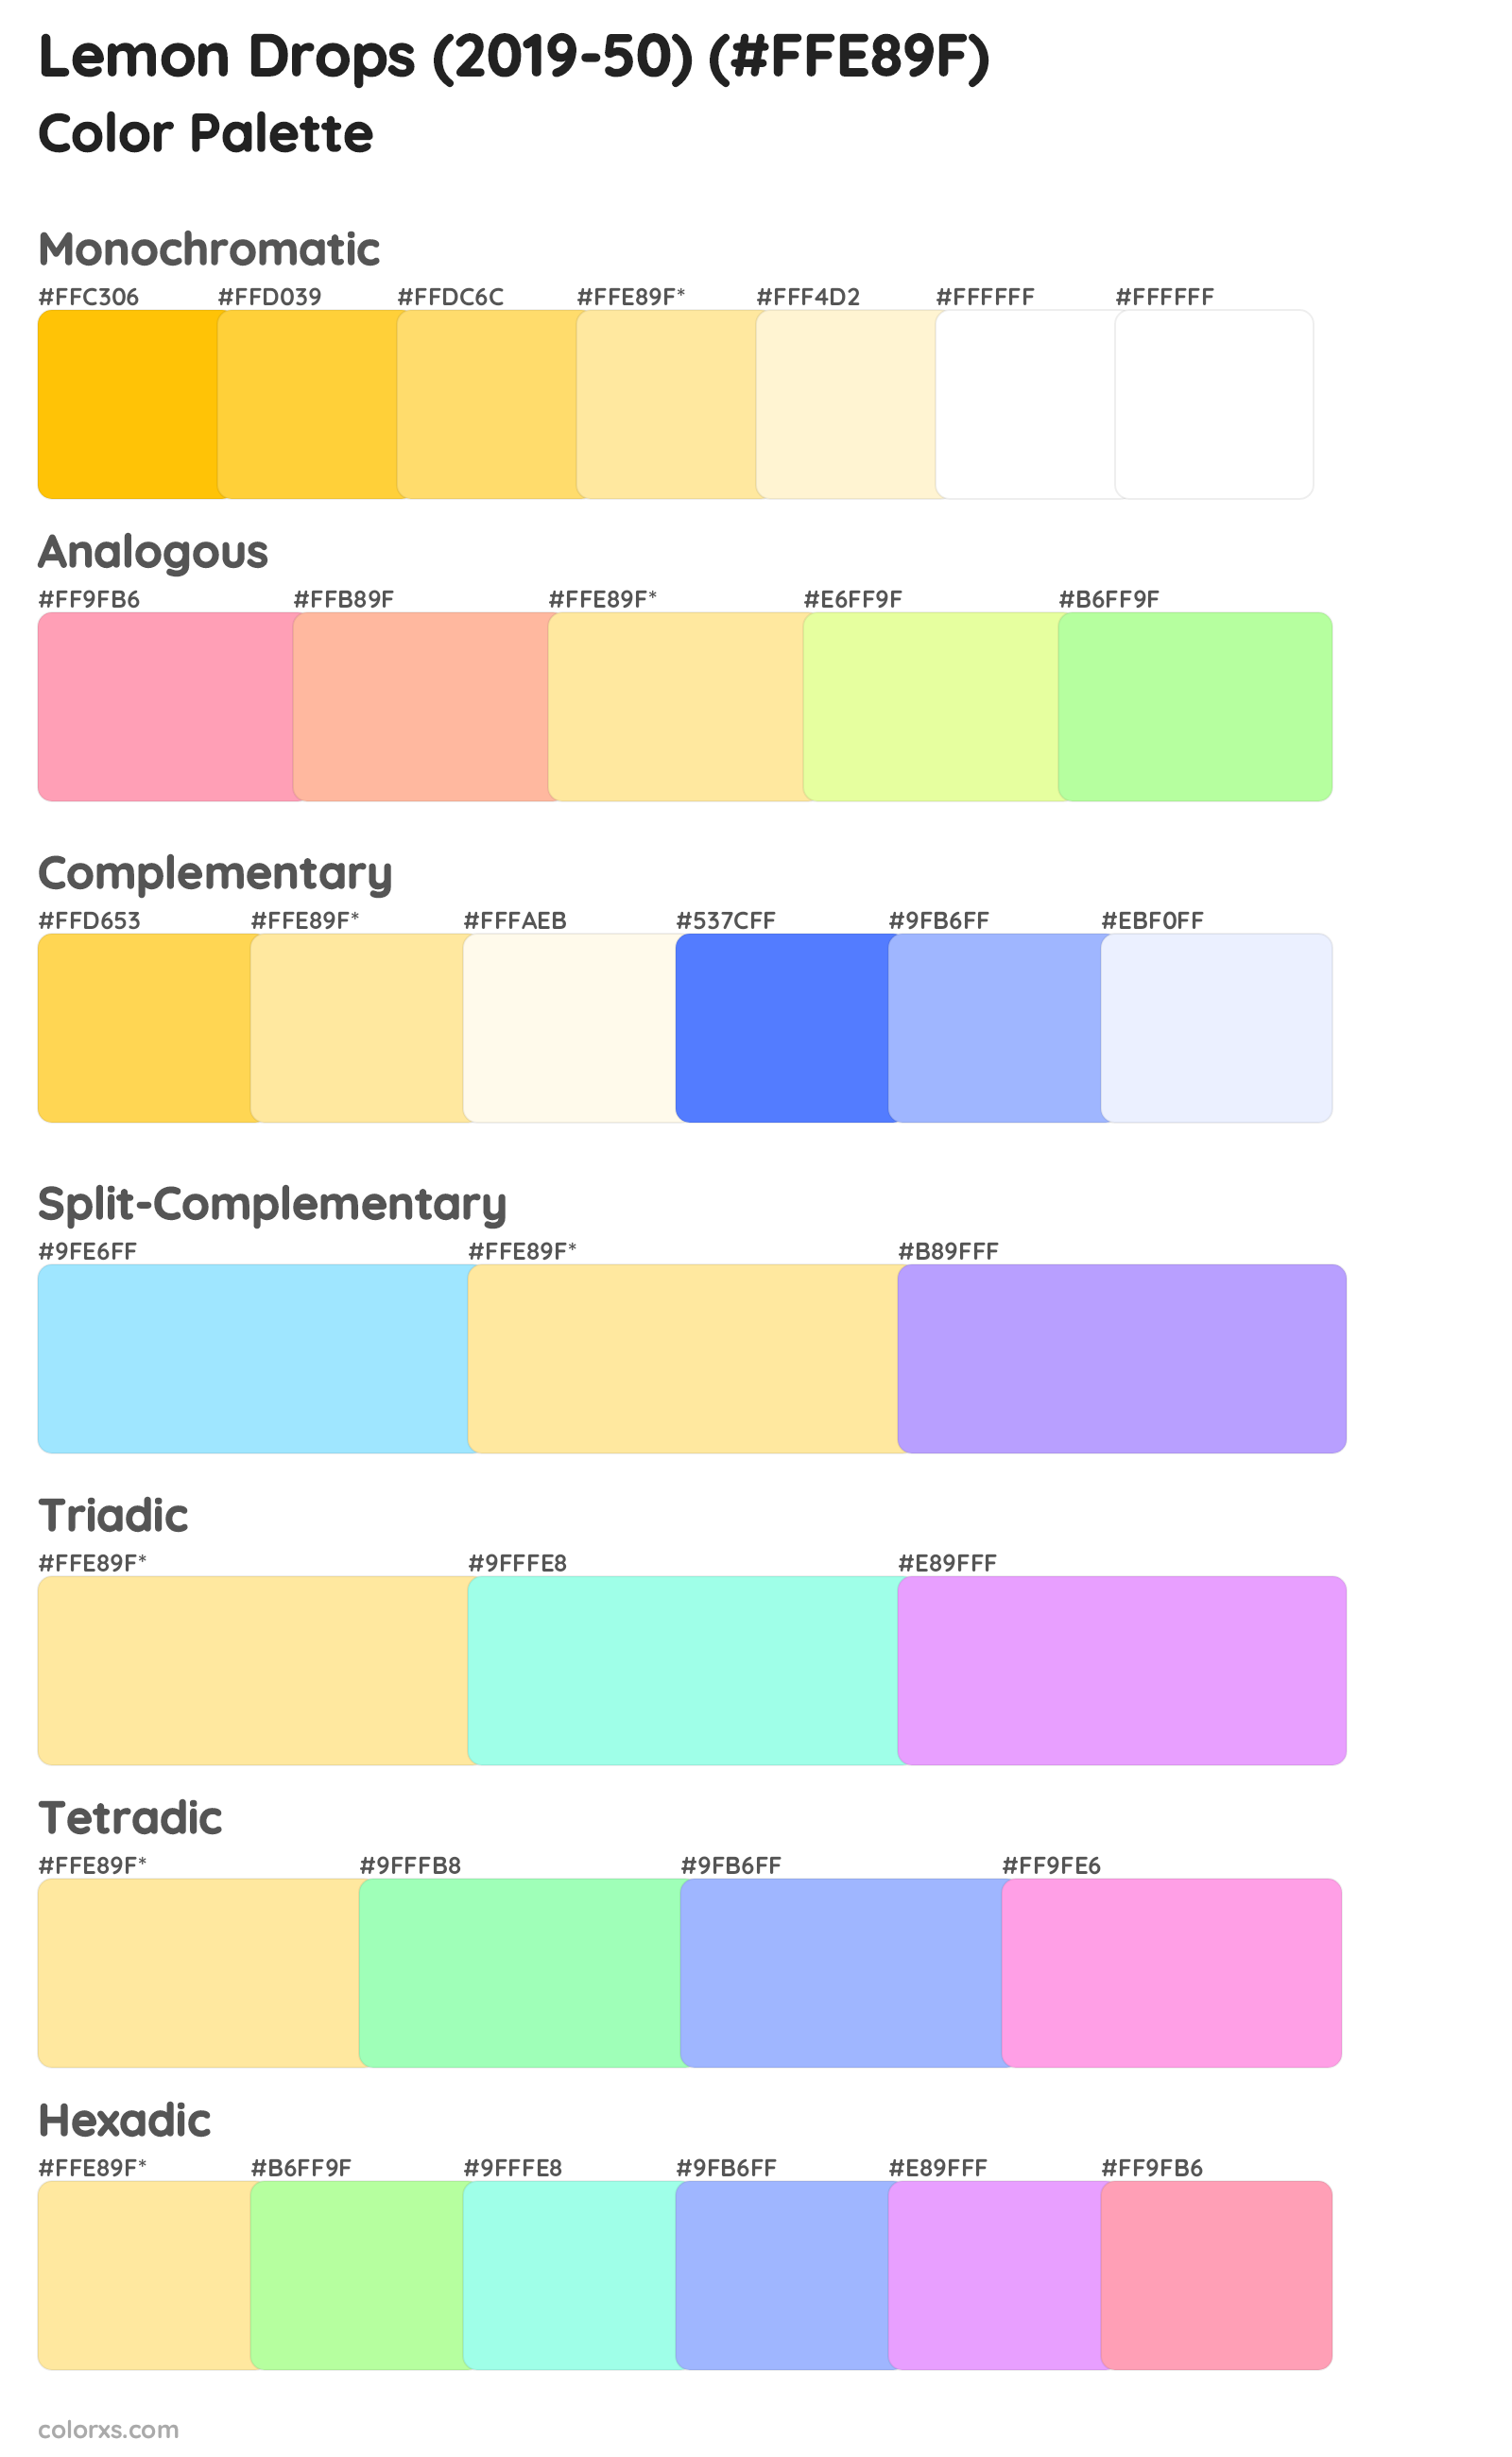 Lemon Drops (2019-50) Color Scheme Palettes